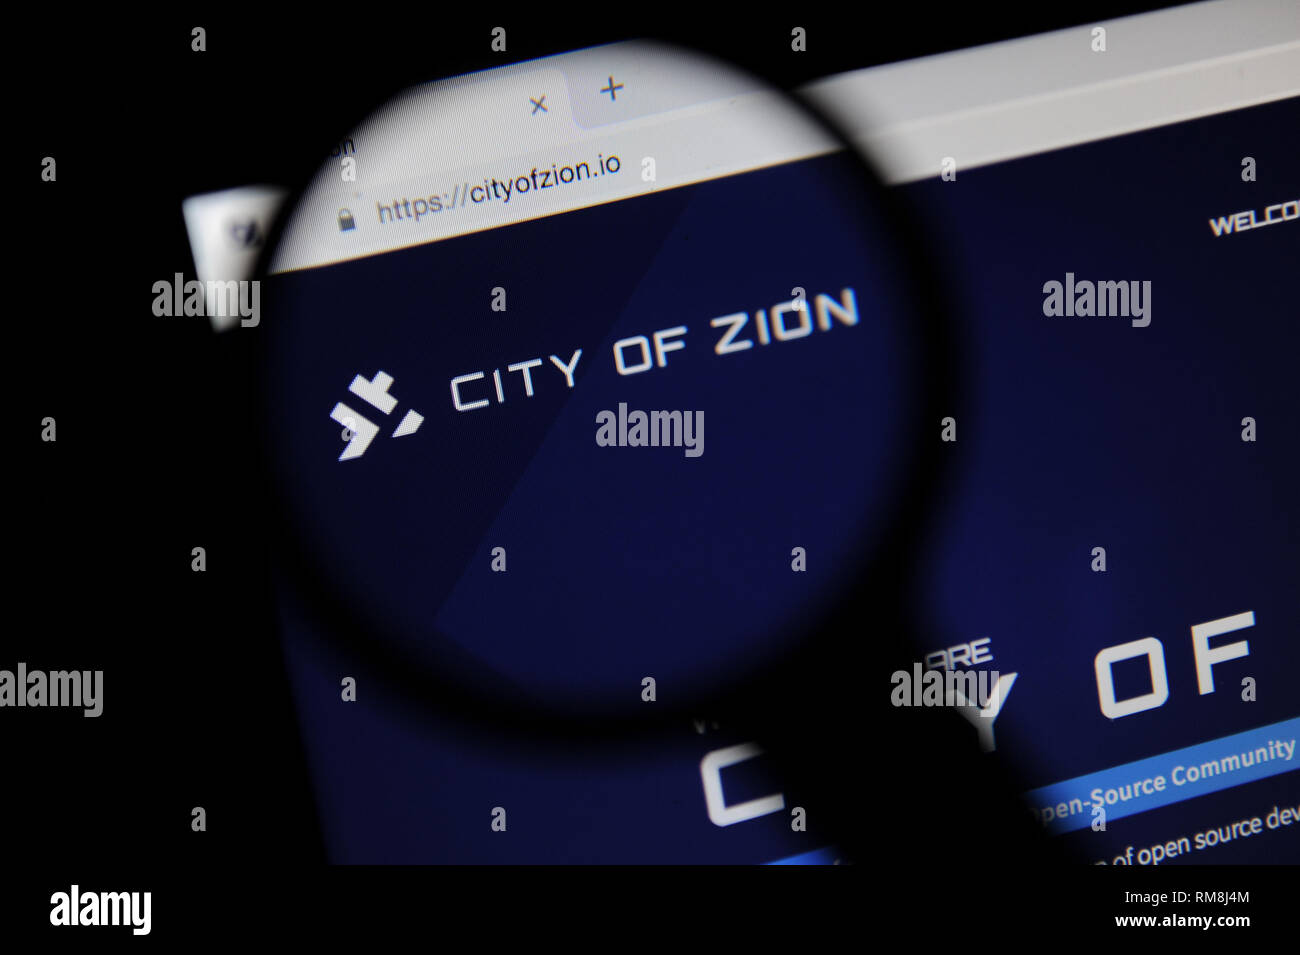 La città di Sion (CoZ) Sito web visto attraverso una lente di ingrandimento Foto Stock